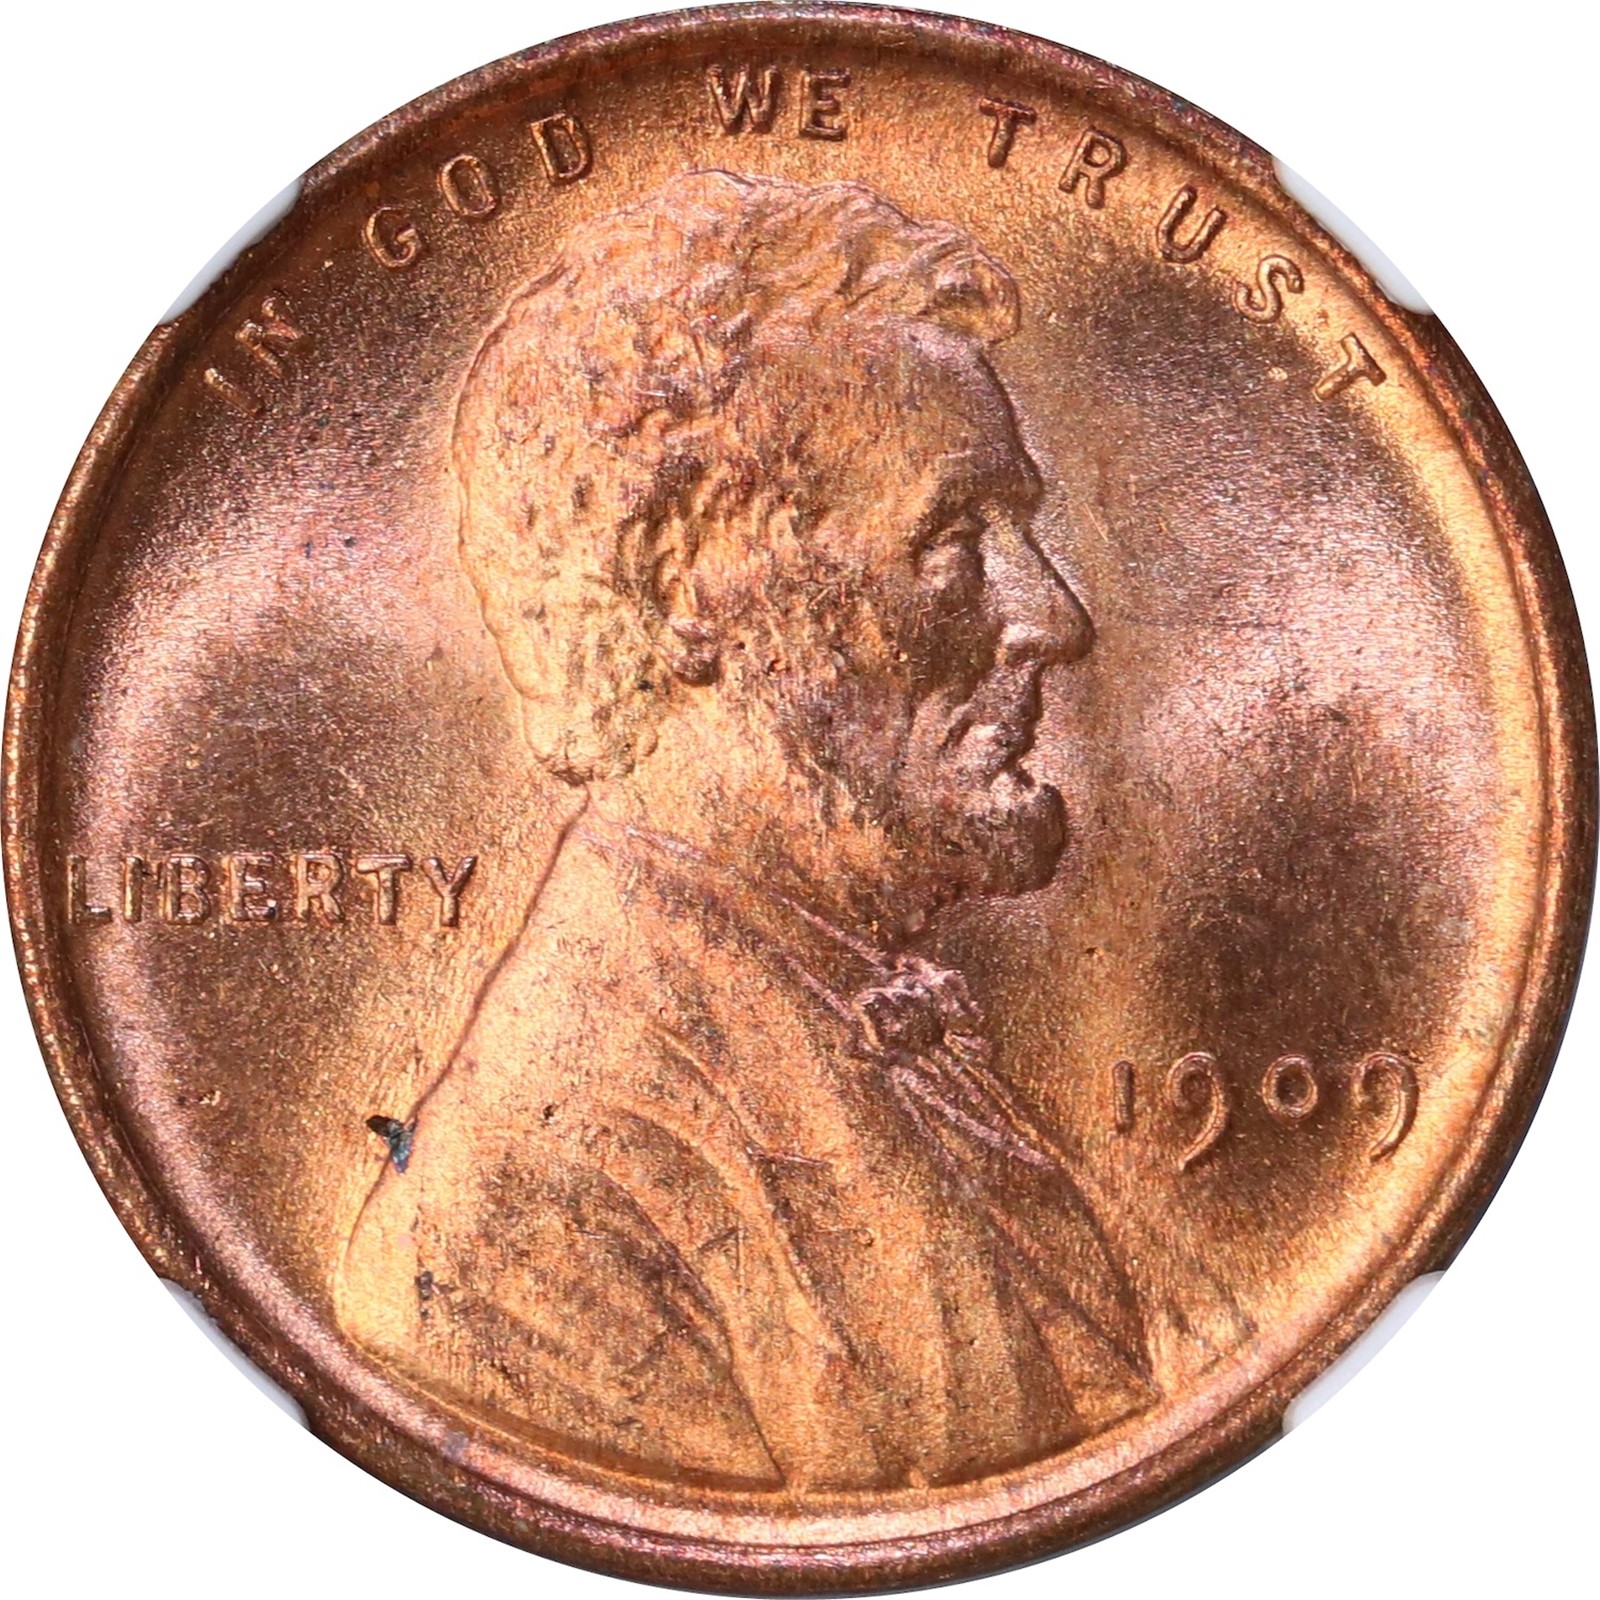 USA. Lincoln Cent 1909 NGC MS64RD